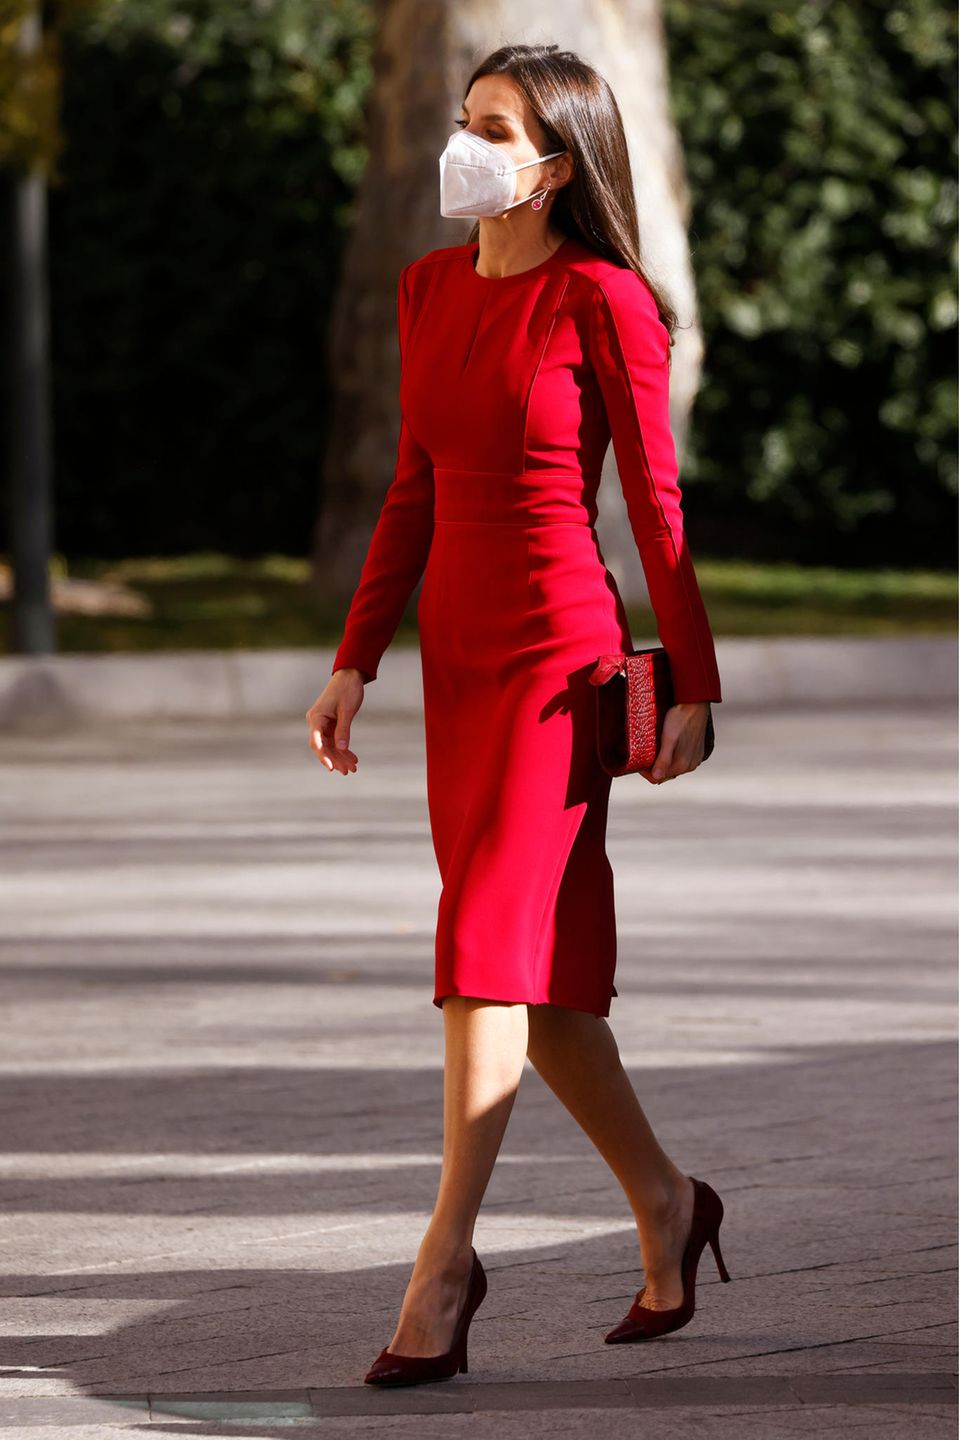 Königin Letizia läuft in einem roten Kleid über die Straße